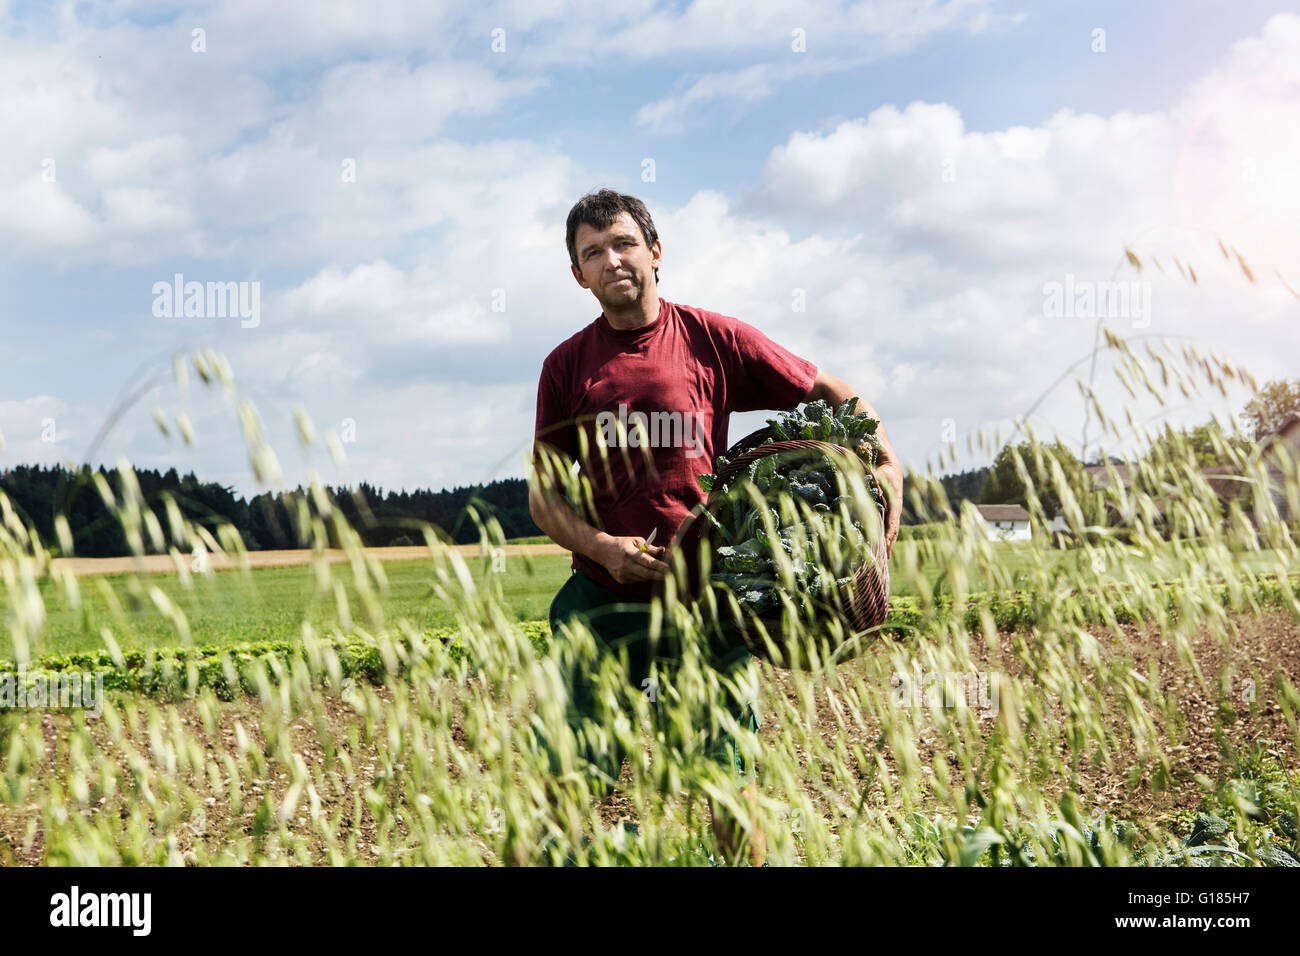 Agriculteur exerçant son panier plein de légumes dans une ferme biologique Banque D'Images